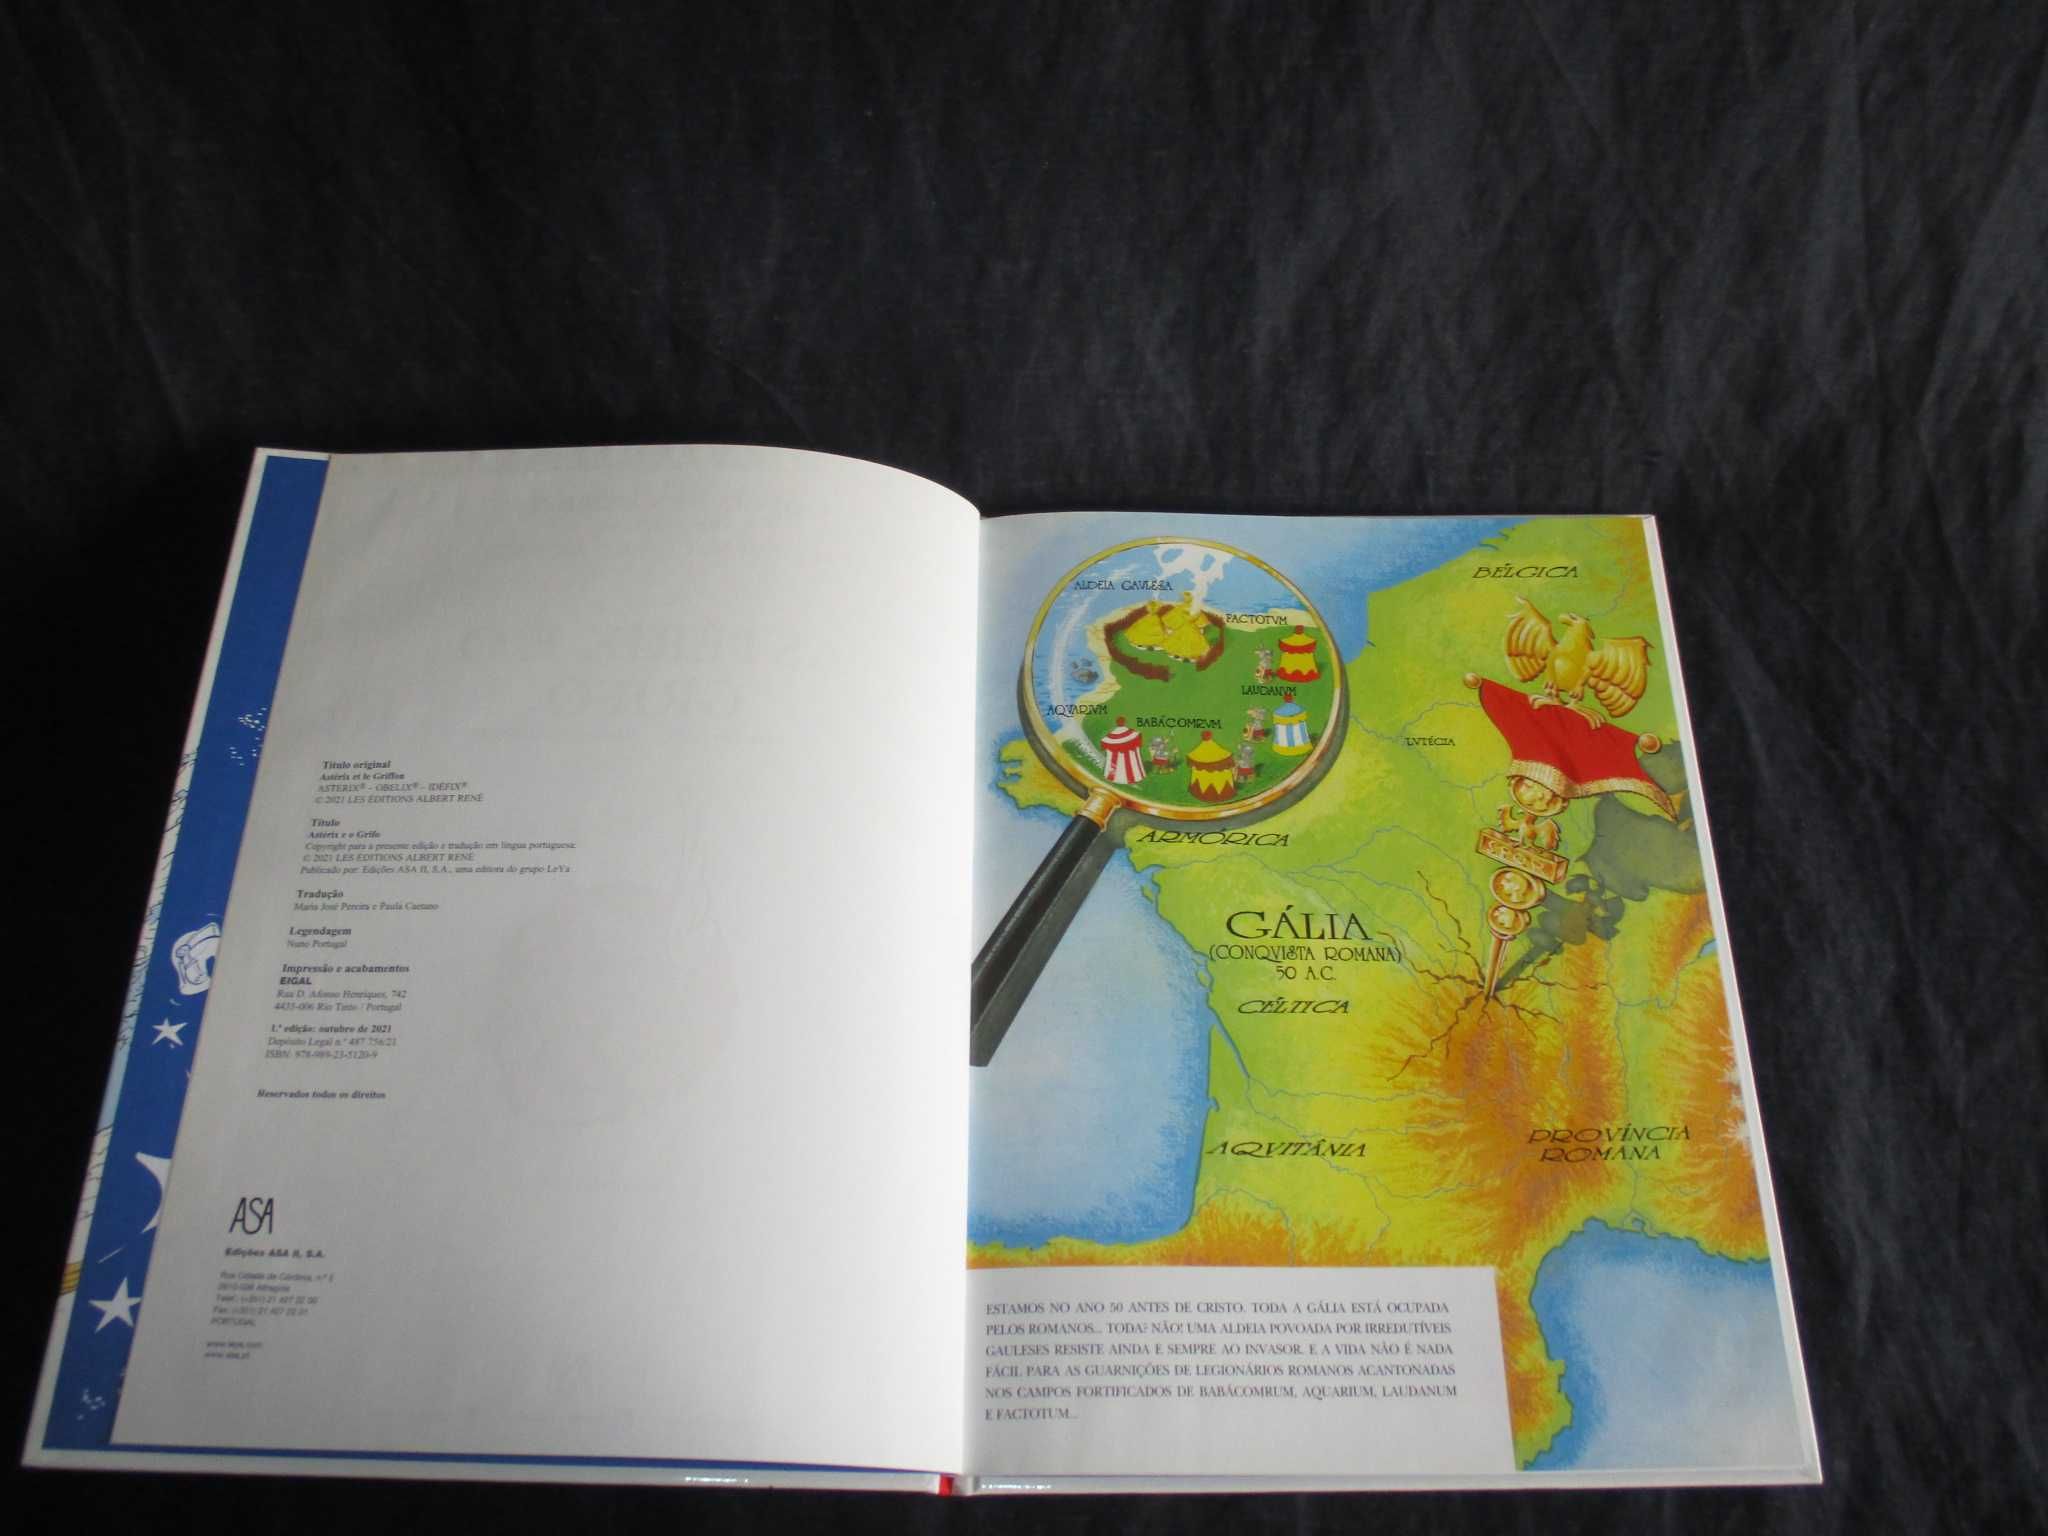 Livro BD Astérix e o Grifo Astérix e Obélix Asa 1ª edição CD Numerado